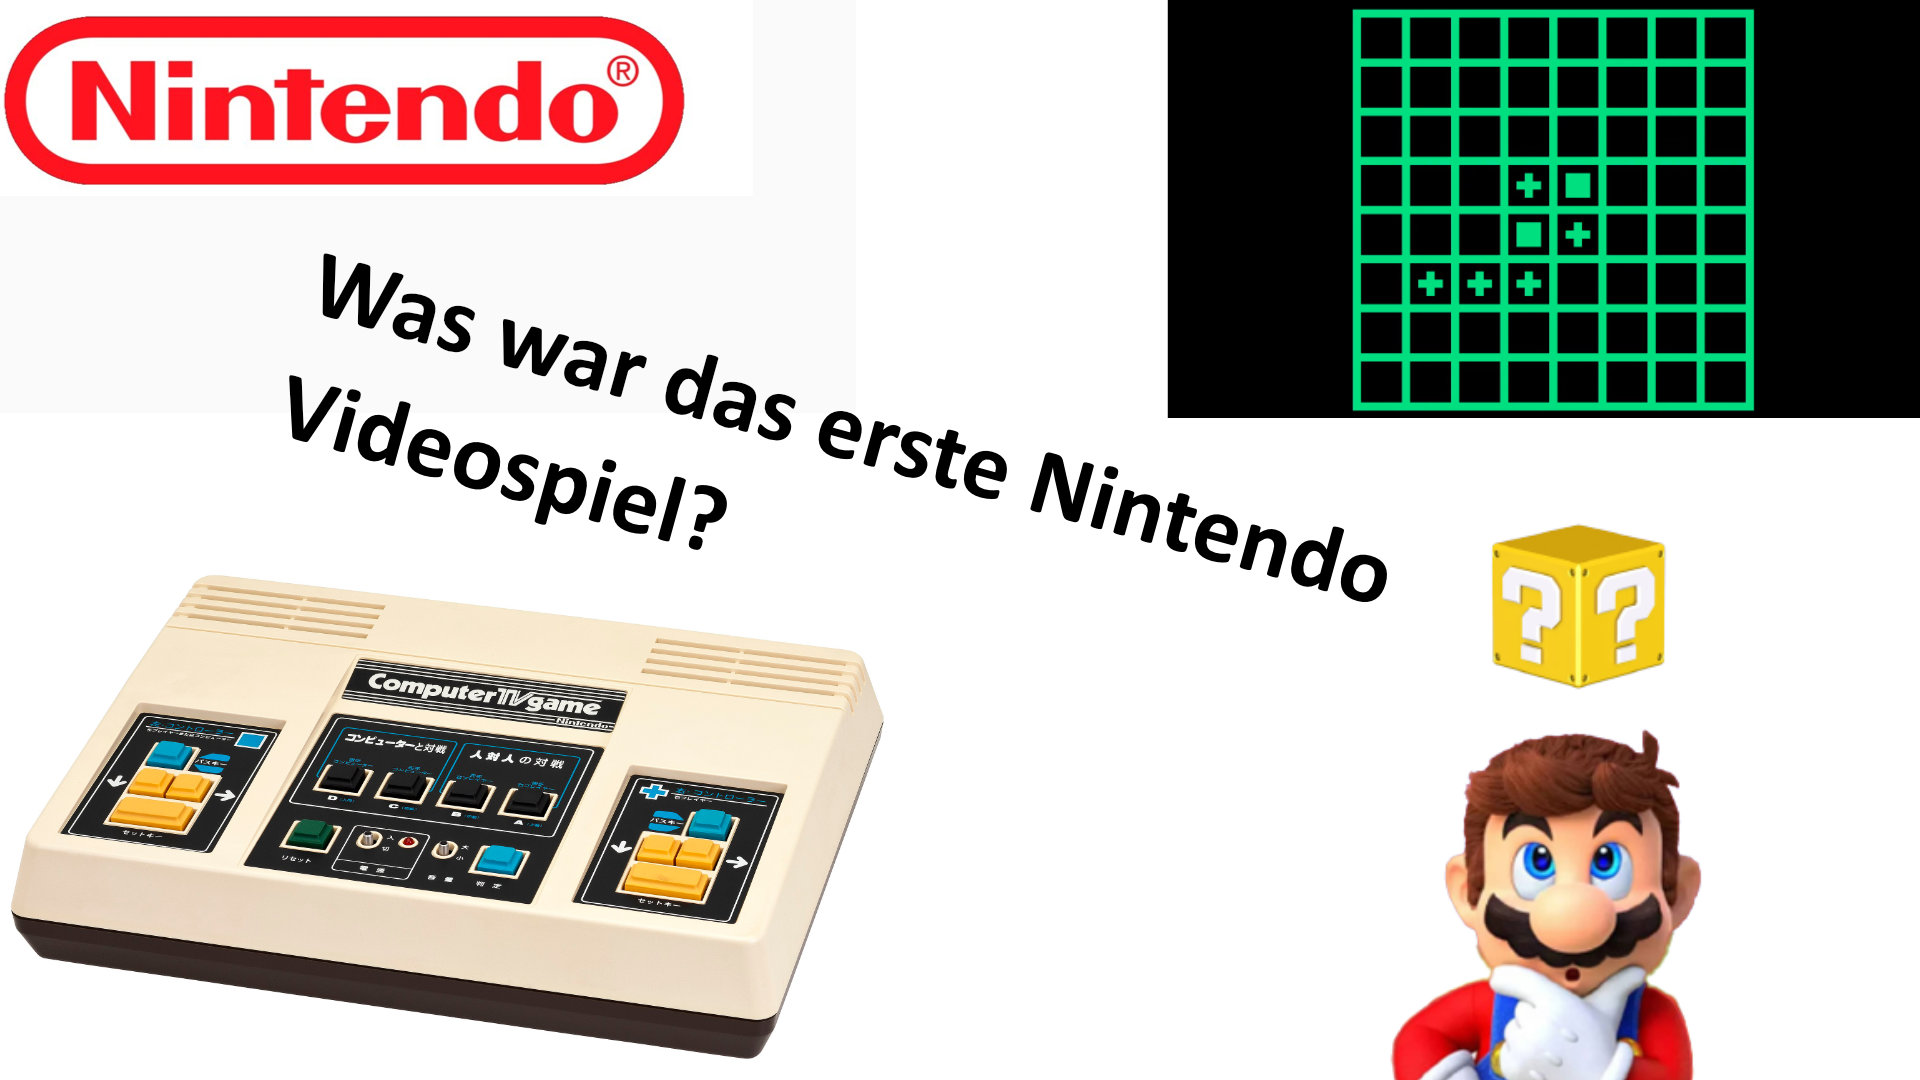 Nintendo: Was war das erste Nintendo Videospiel?